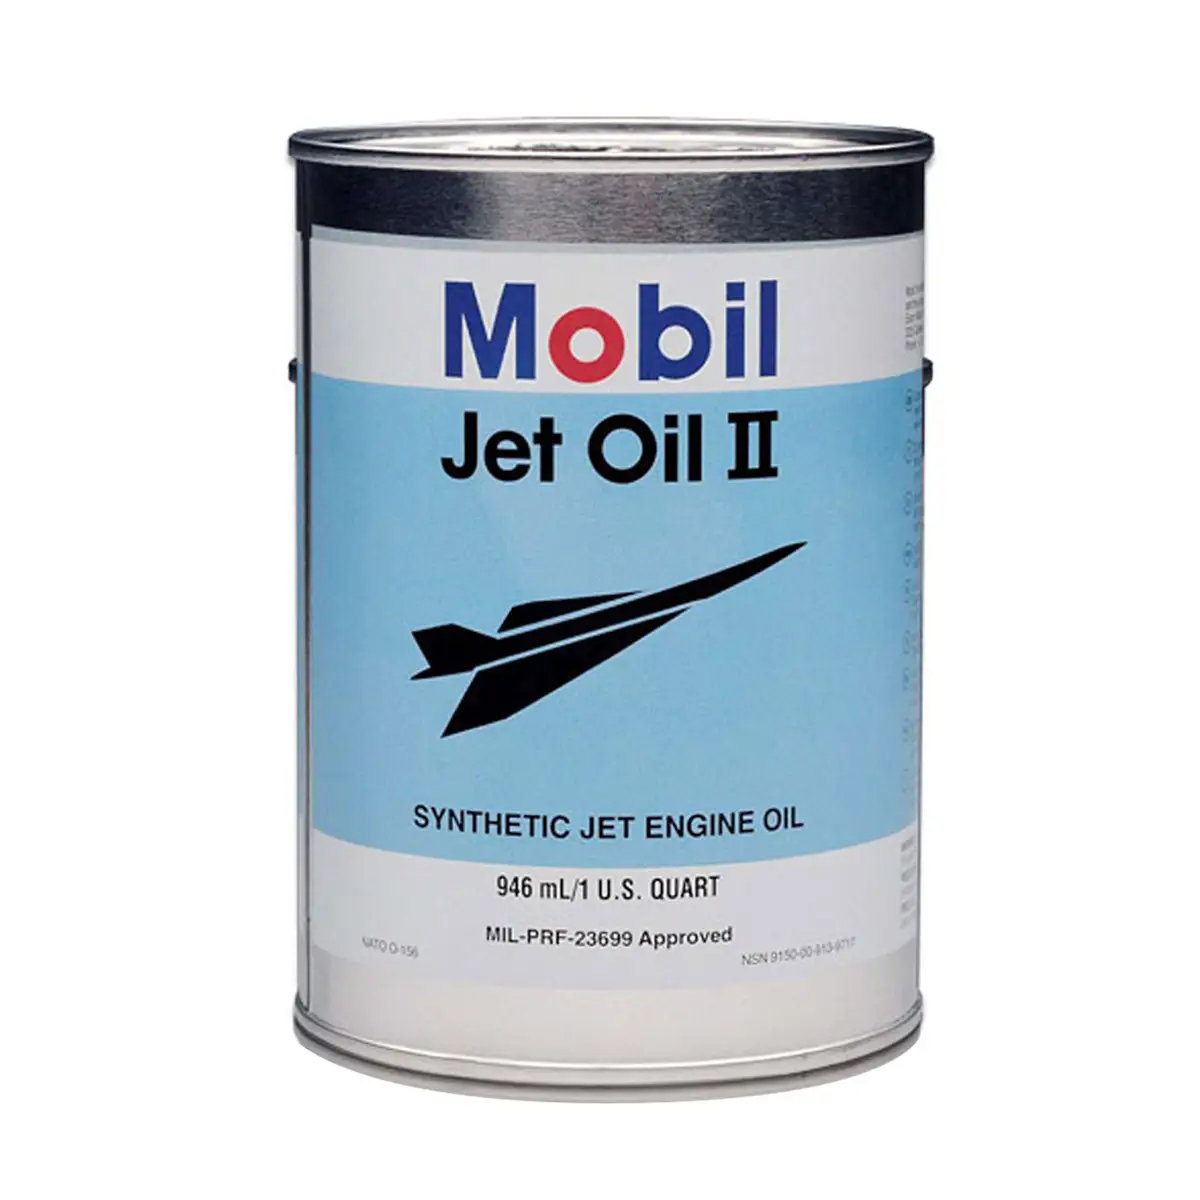 Mobil Jet oli 2 oli mesin bahan bakar direkomendasikan untuk kinerja maksimum harus digunakan dengan oli mesin standar sepenuhnya kelas Syn